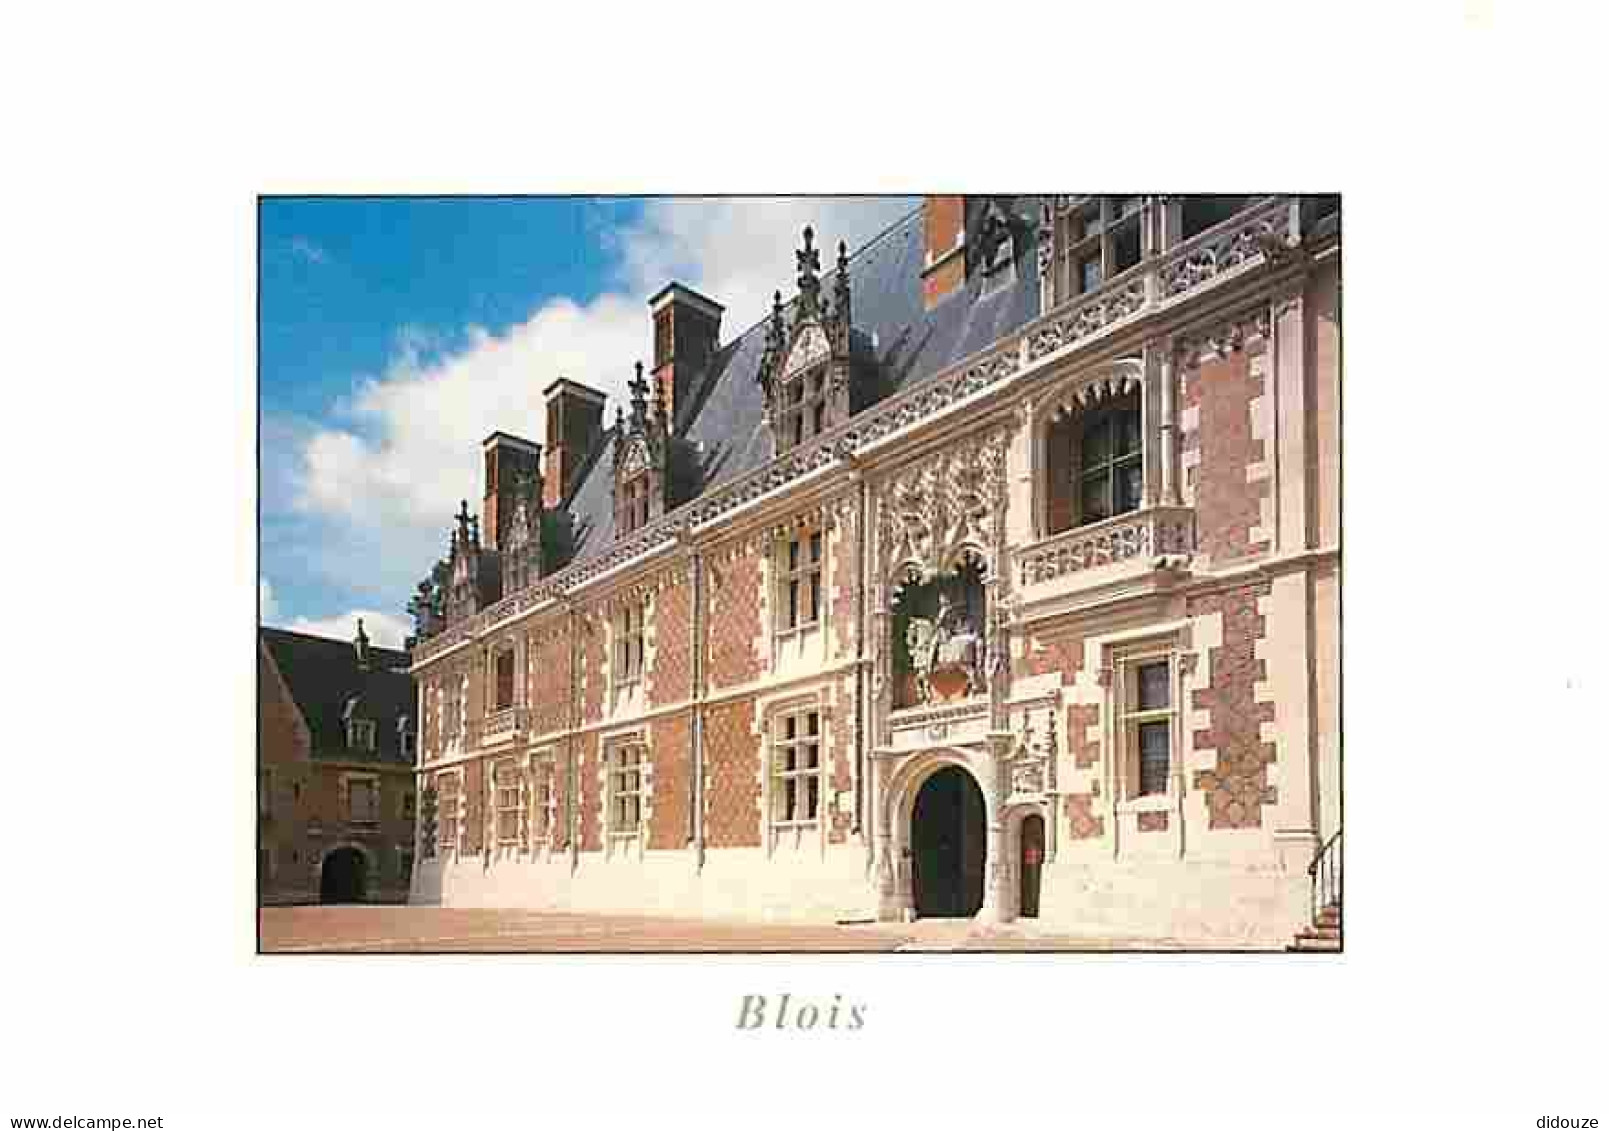 41 - Blois - L'entrée Du Château: L'aile Louis XII Avec Sa Porte Surmontée Du Porc-épic Et De La Statue équestre Du Roi  - Blois